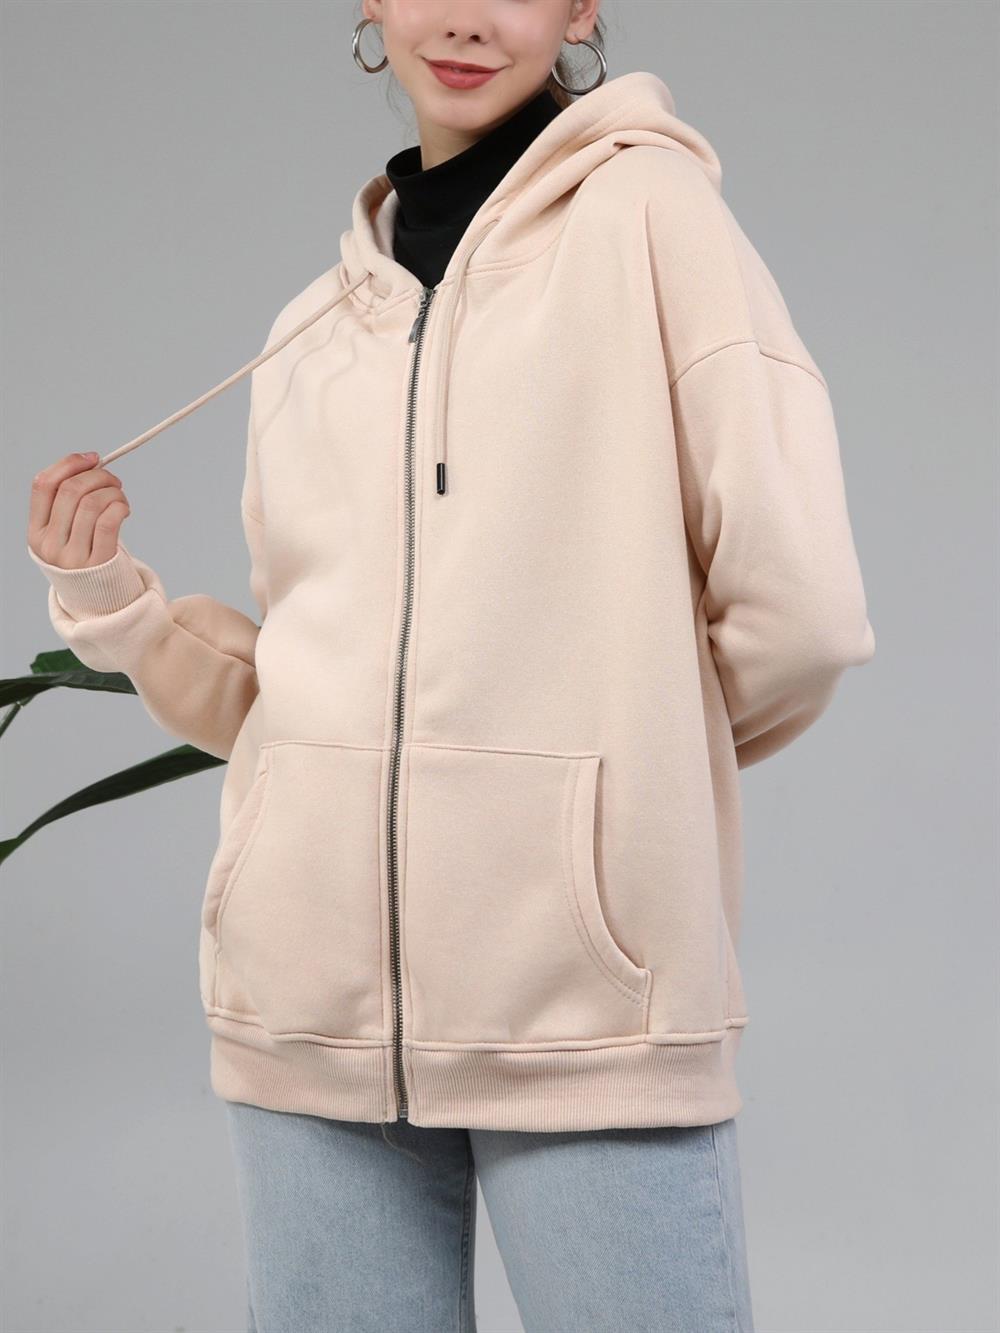 Şardonlu 3 İplik Kapşonlu Sweat -Bej - 153-0032-R56 | DIVON Marka Kapşonlu  Sweatshirt Modelleri | Kadın Tesettür Giyim - KaliteMall.com